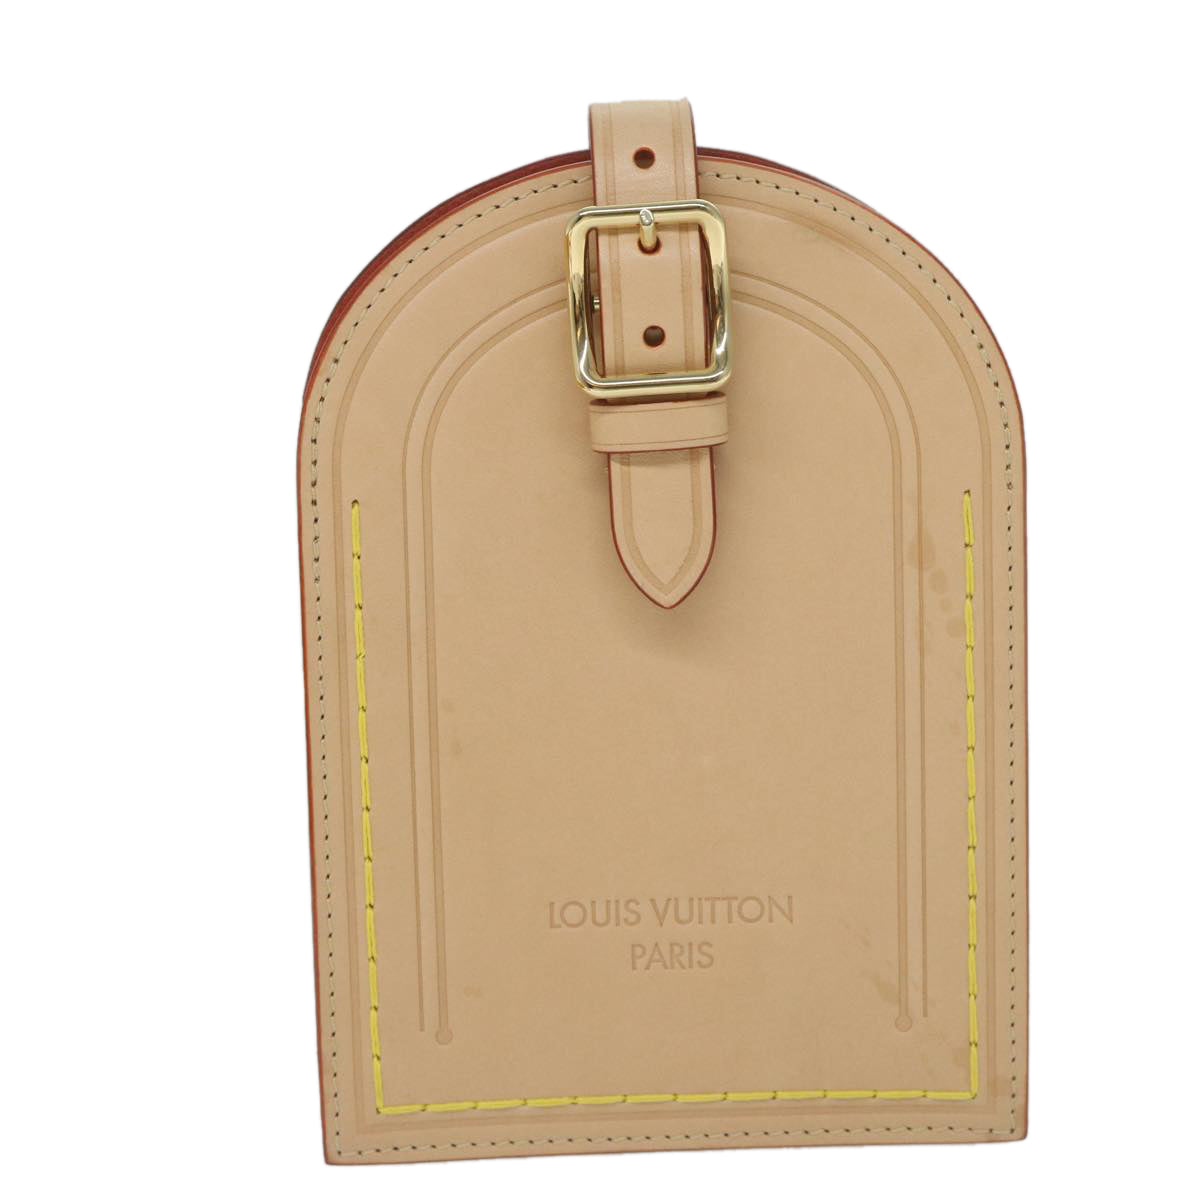 LOUIS VUITTON Name Tag XL Clutch Shoulder Bag Leather Beige M82225 Auth 59785S